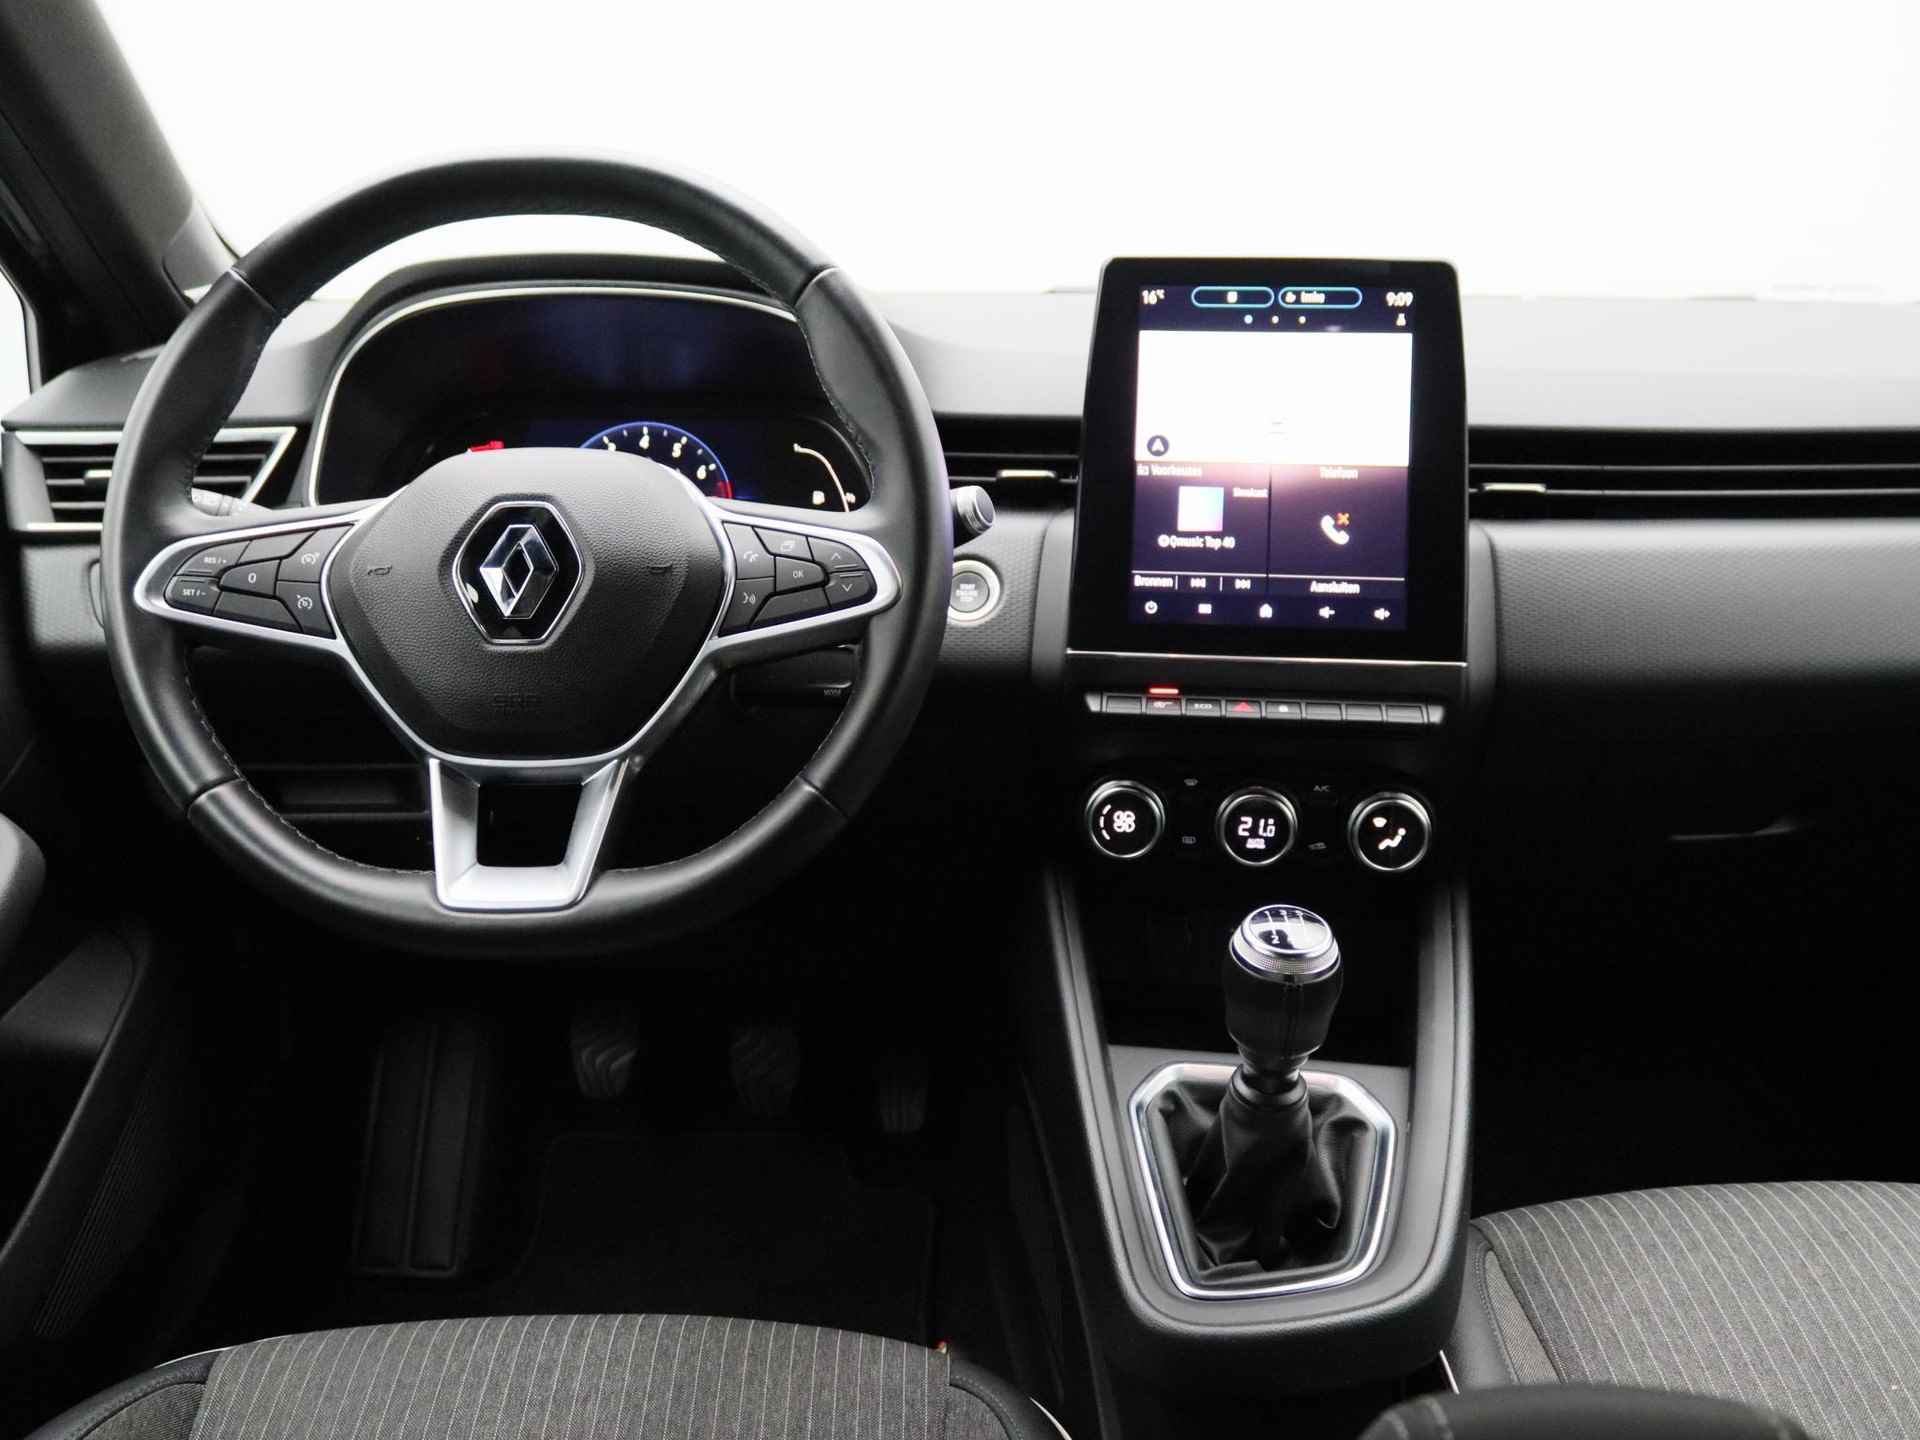 Renault Clio 1.0 TCe 100Pk Intens | 9'3" Navigatie| Bose Geluidsysteem | Apple & Android Carplay | Parkeersensoren & Camera | Climate Control | Automatische Verlichting & Regensensoren | 17" Lichtmetalen Velgen |ntrol| Parkeersensoren Rondom| Achteruitrij Camera| - 8/33